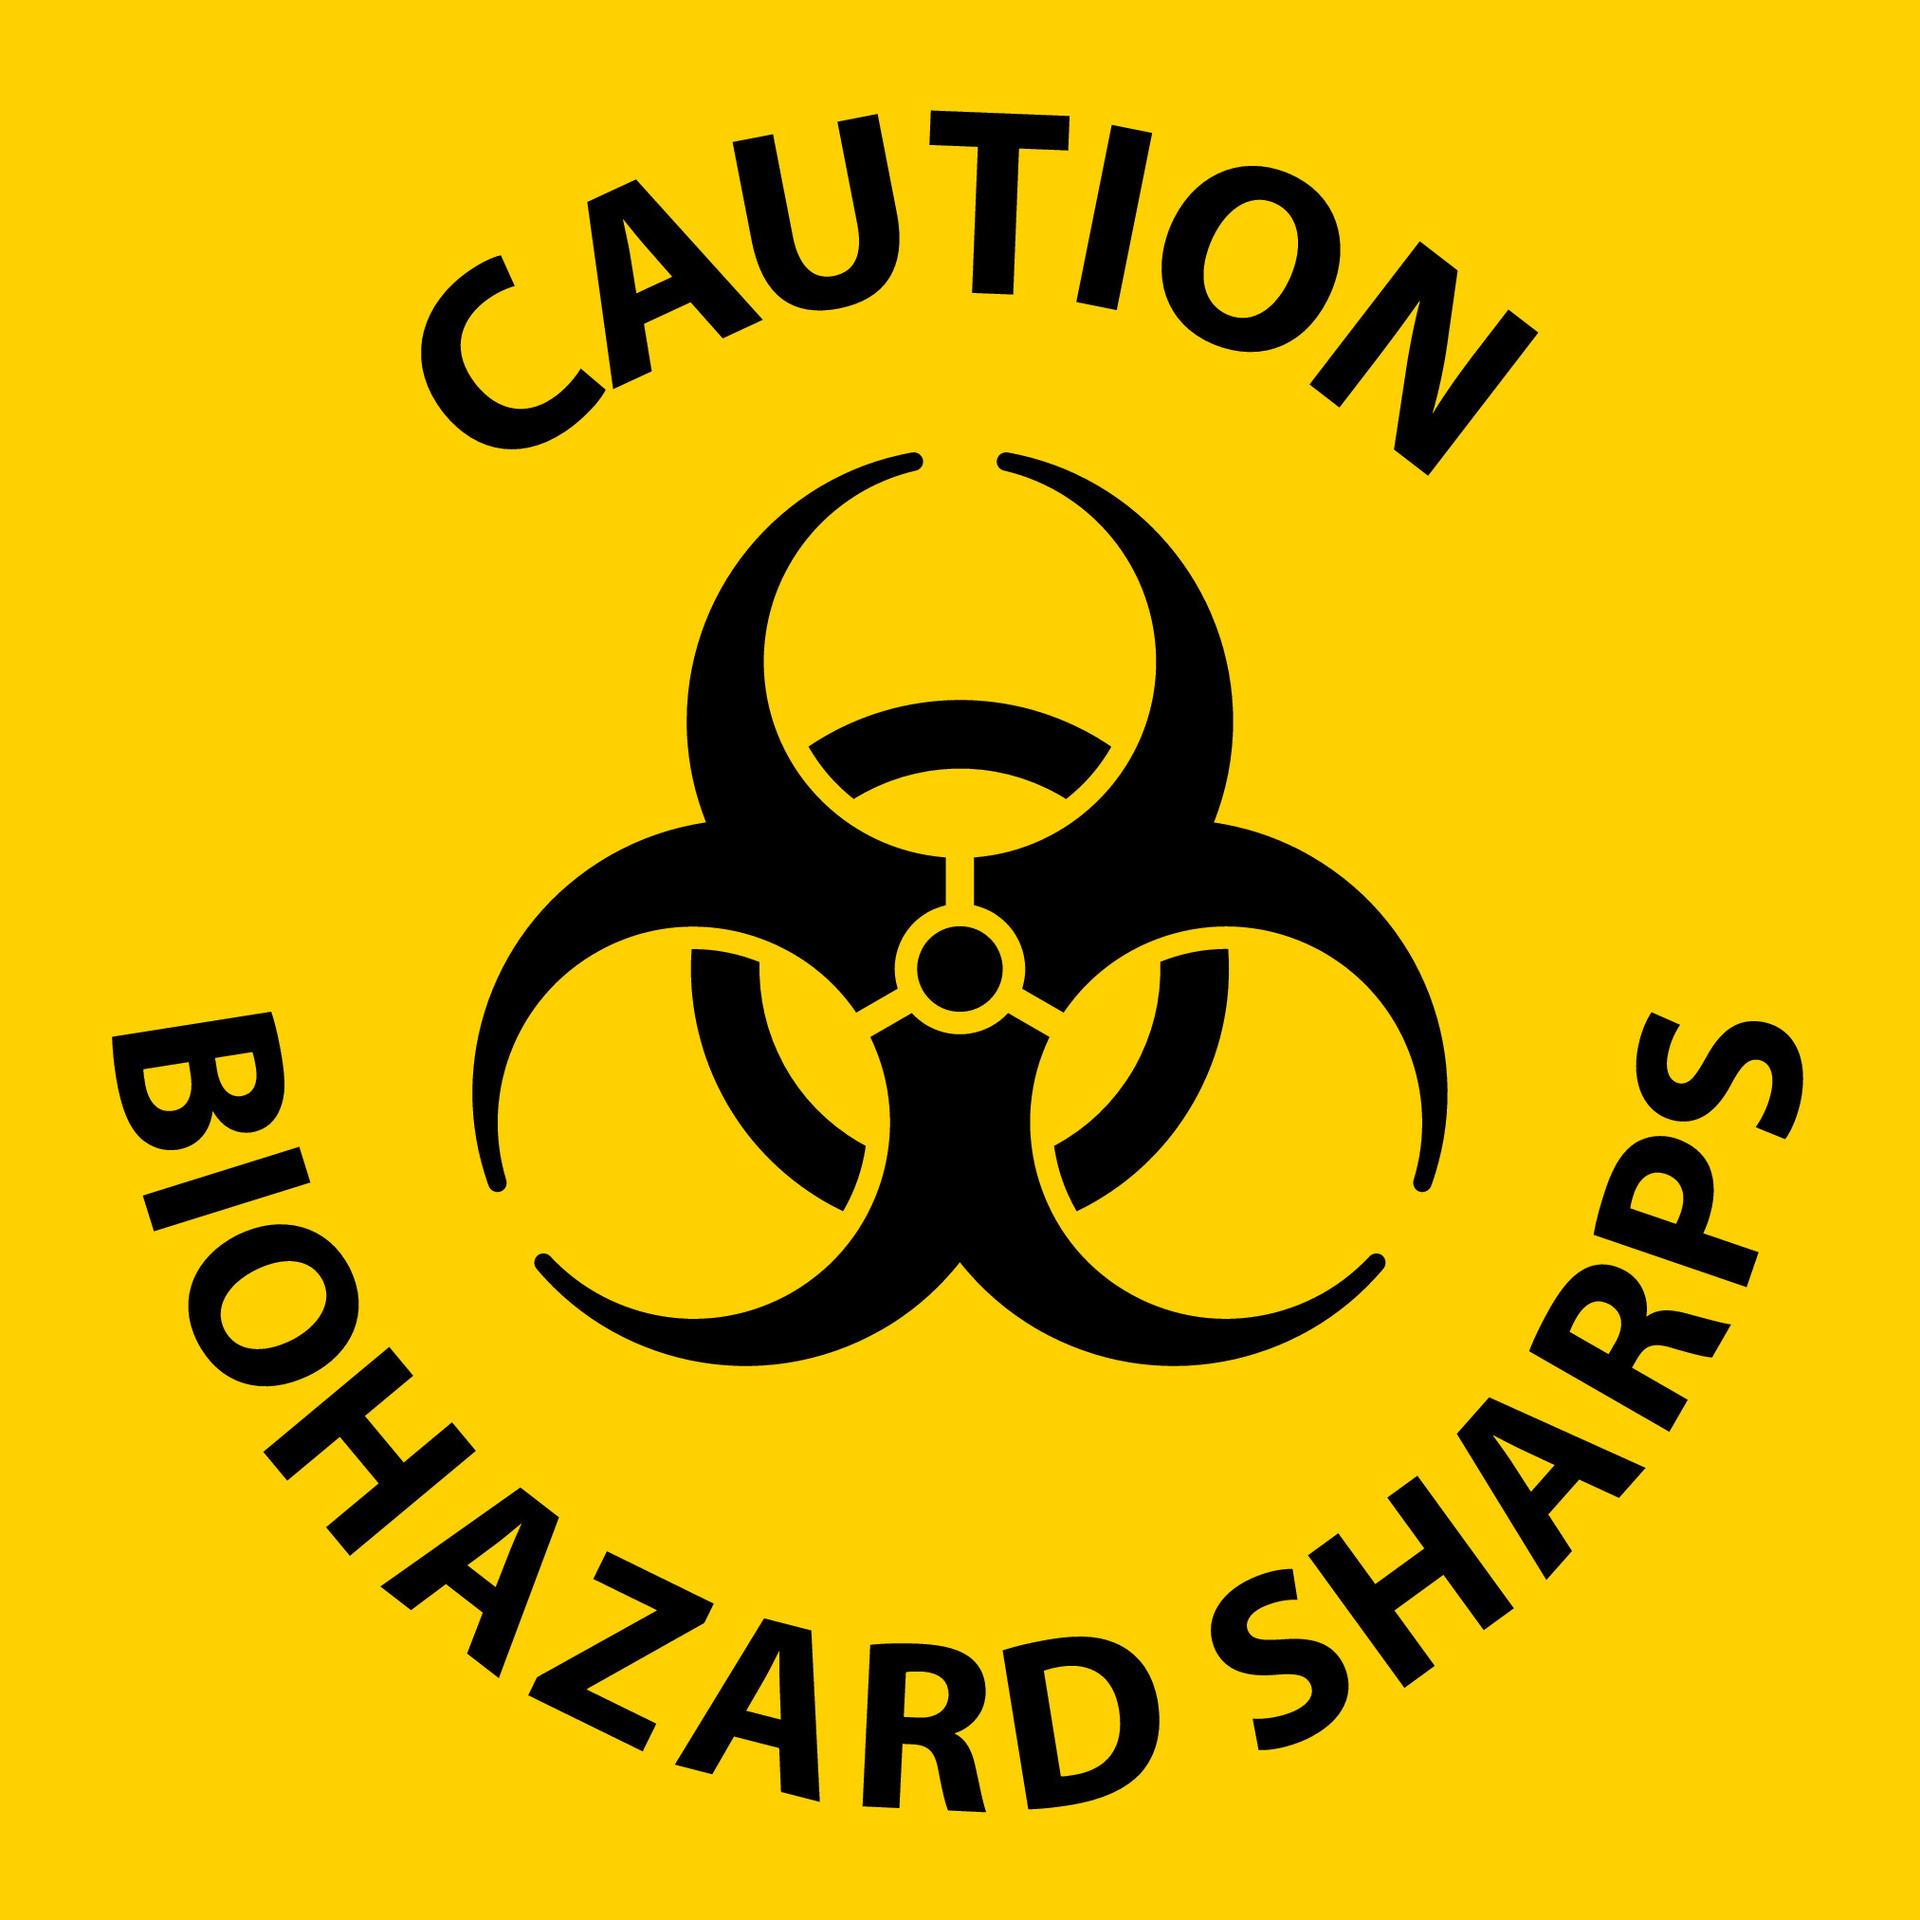 Caution Biohazard Label, Biohazard Sharps 25731990 Vector Art at Vecteezy